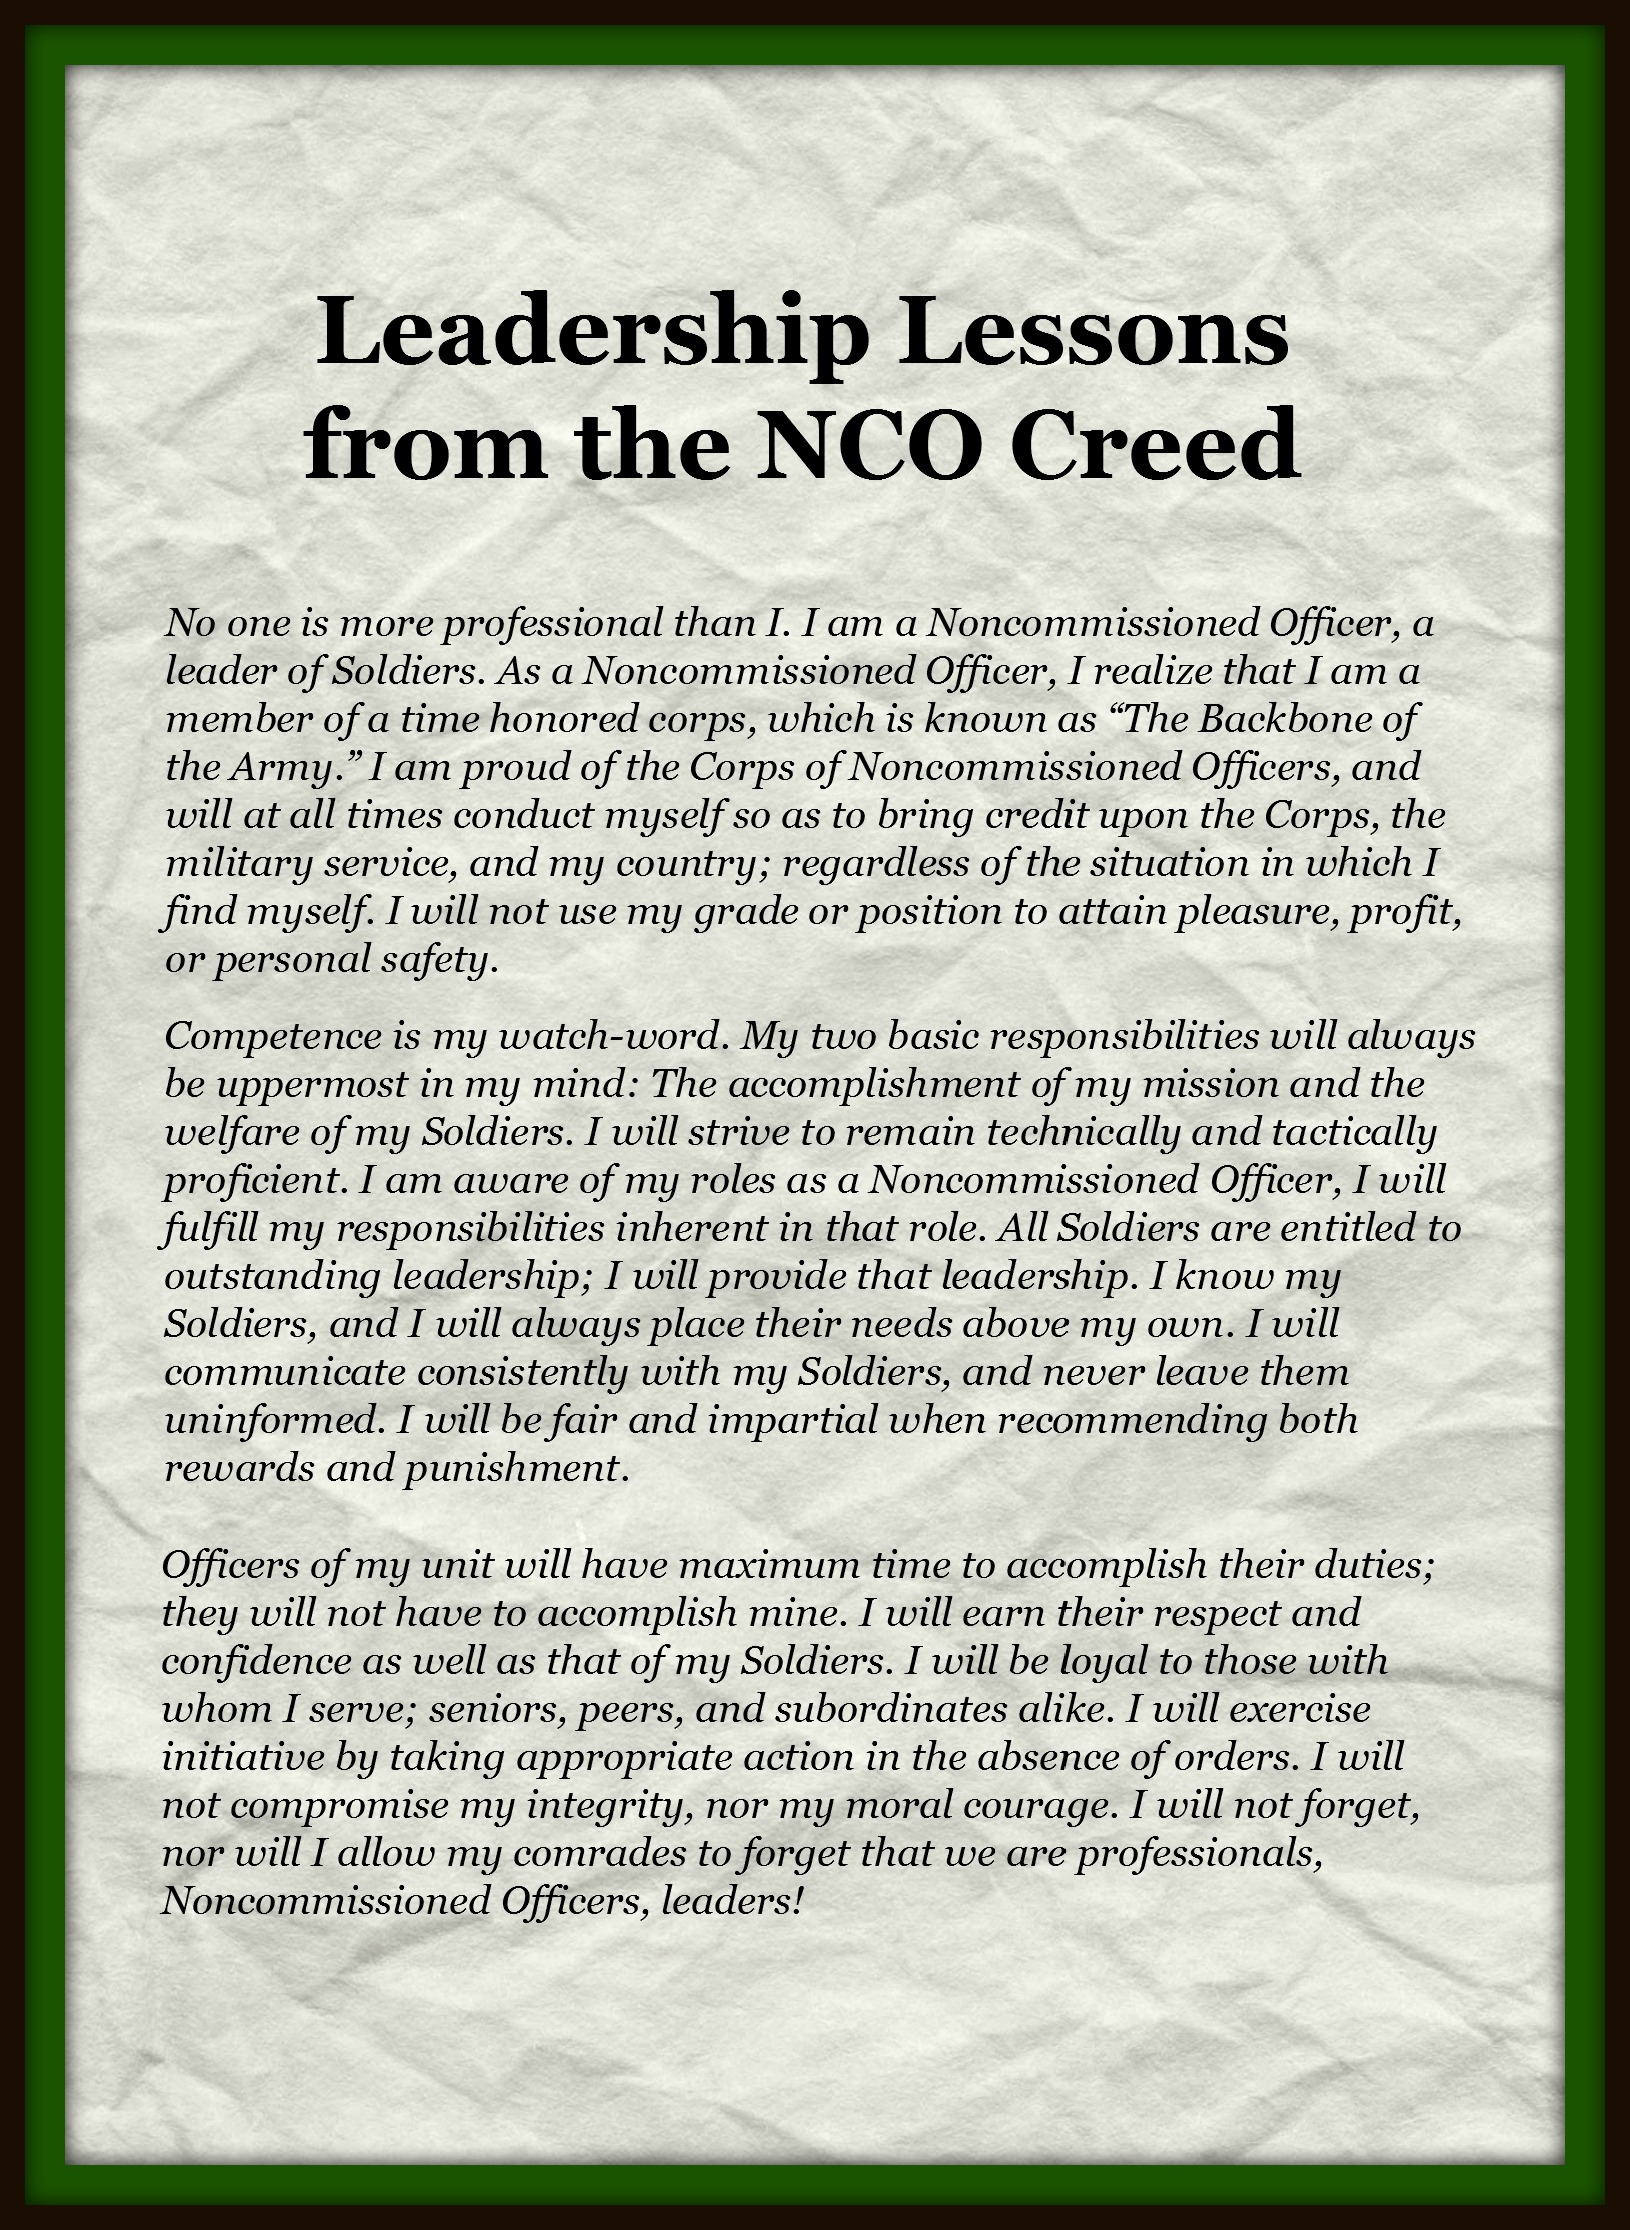 Military leadership essay